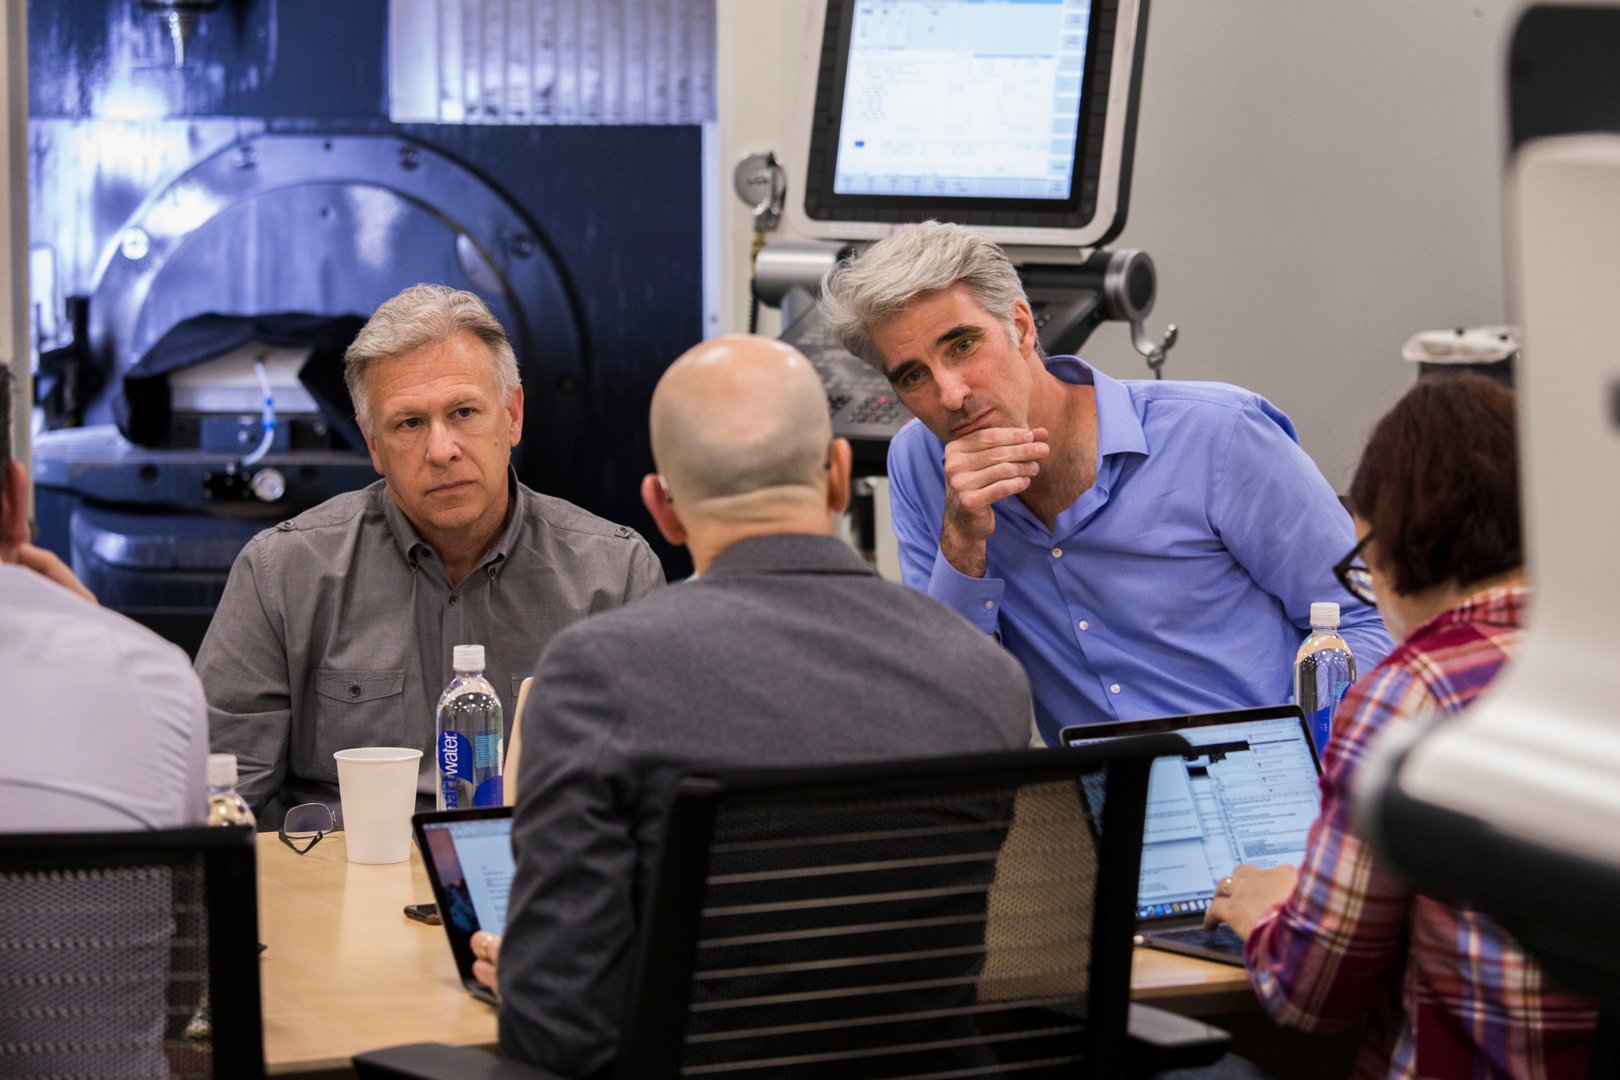 Phil Schiller อดีตผู้จัดการฝ่ายการตลาดระดับโลกของ Apple (ซ้าย) และ Craig Federighi รองประธานอาวุโสฝ่ายพัฒนาซอฟต์แวร์ของ Apple (ขวา) พูดคุยกับ Lance Ulanoff (เบื้องหน้า) เกี่ยวกับ Mac Pro